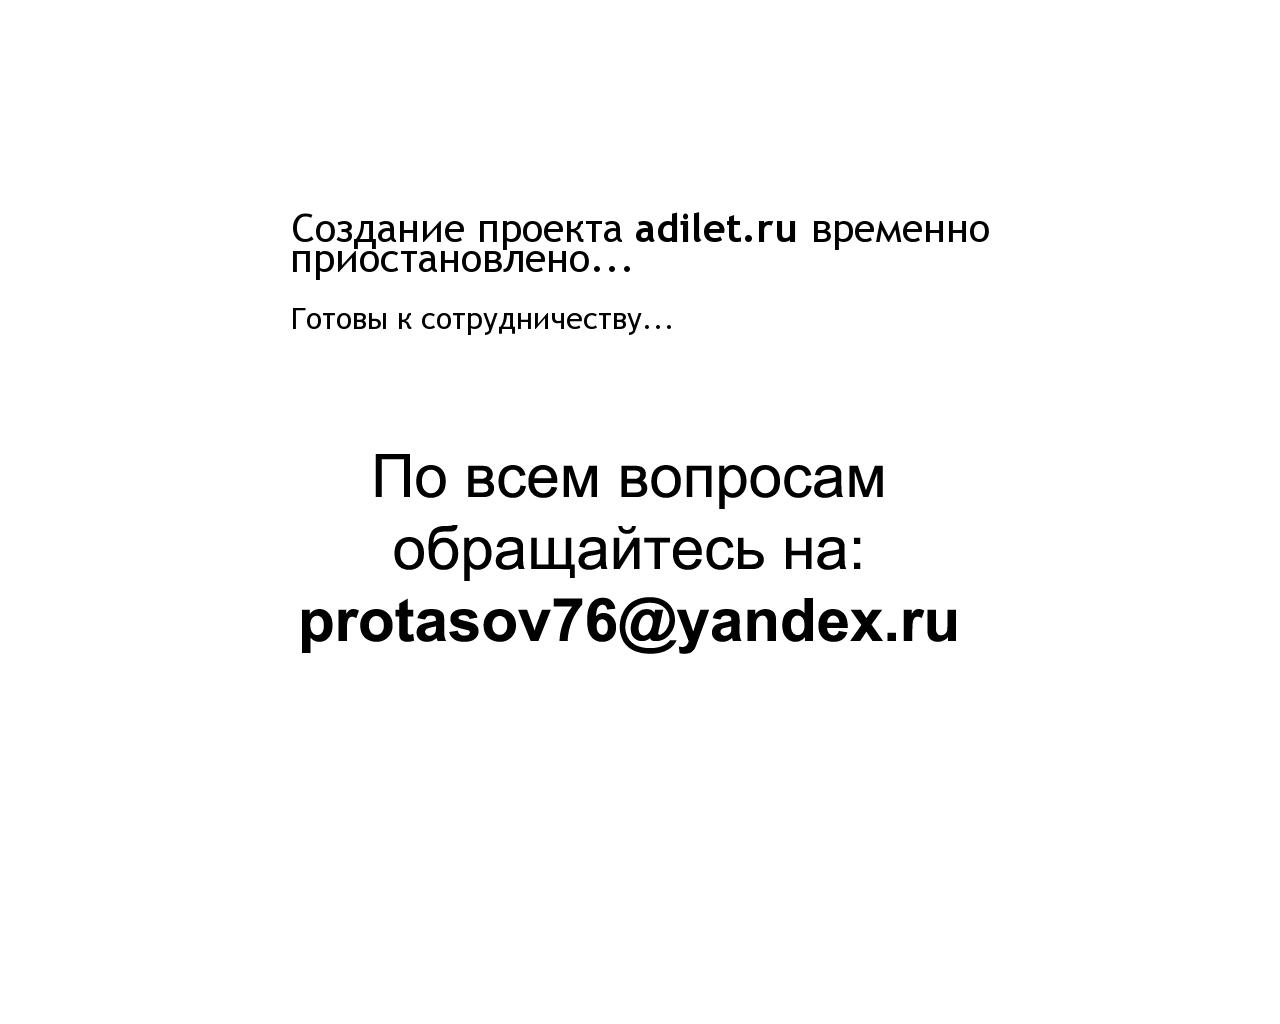 Изображение сайта adilet.ru в разрешении 1280x1024